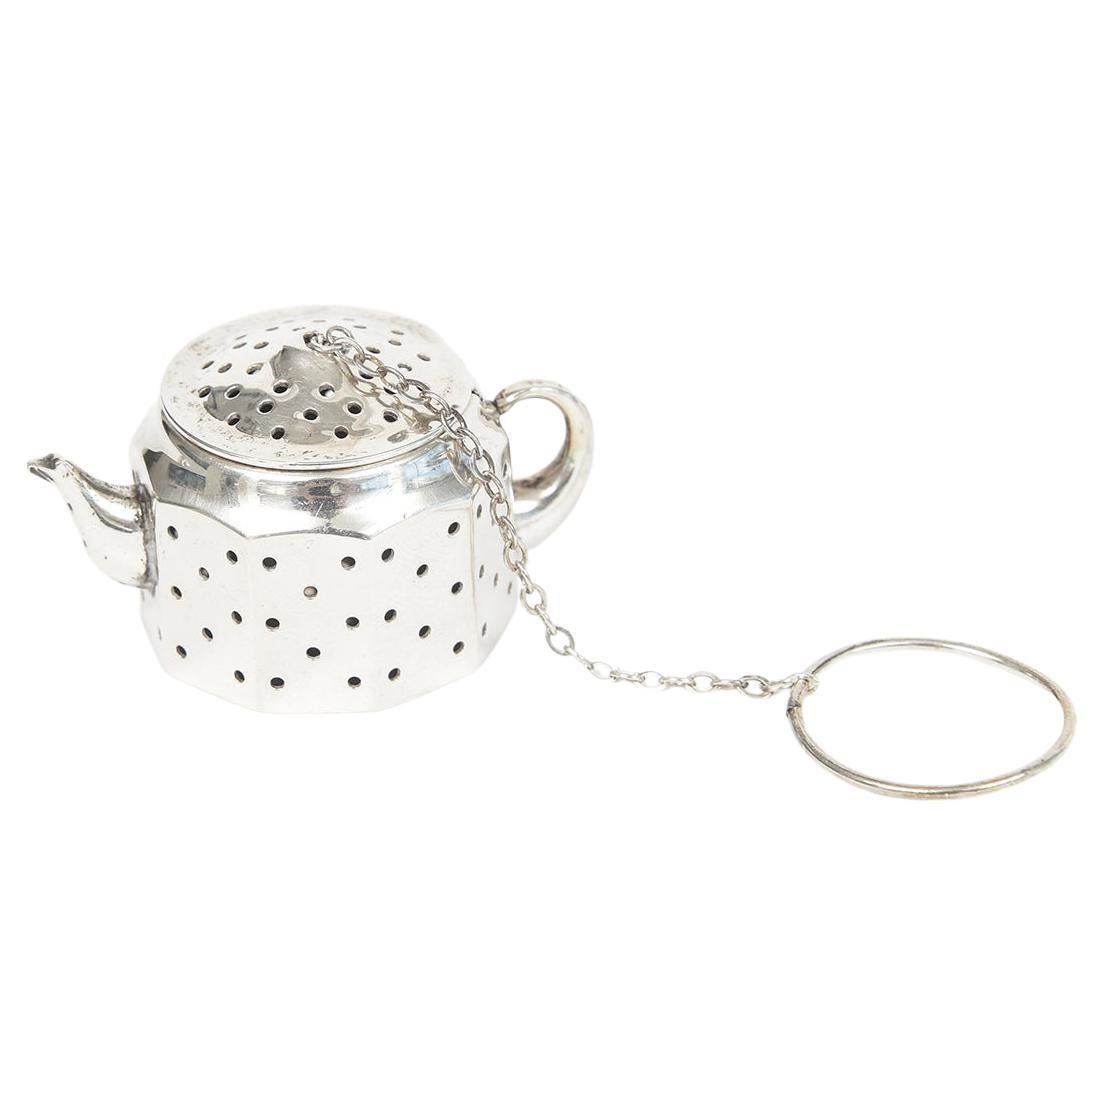 Amcraft Sterling Silver Figural Teapot Tea Ball Strainer Holder For Sale